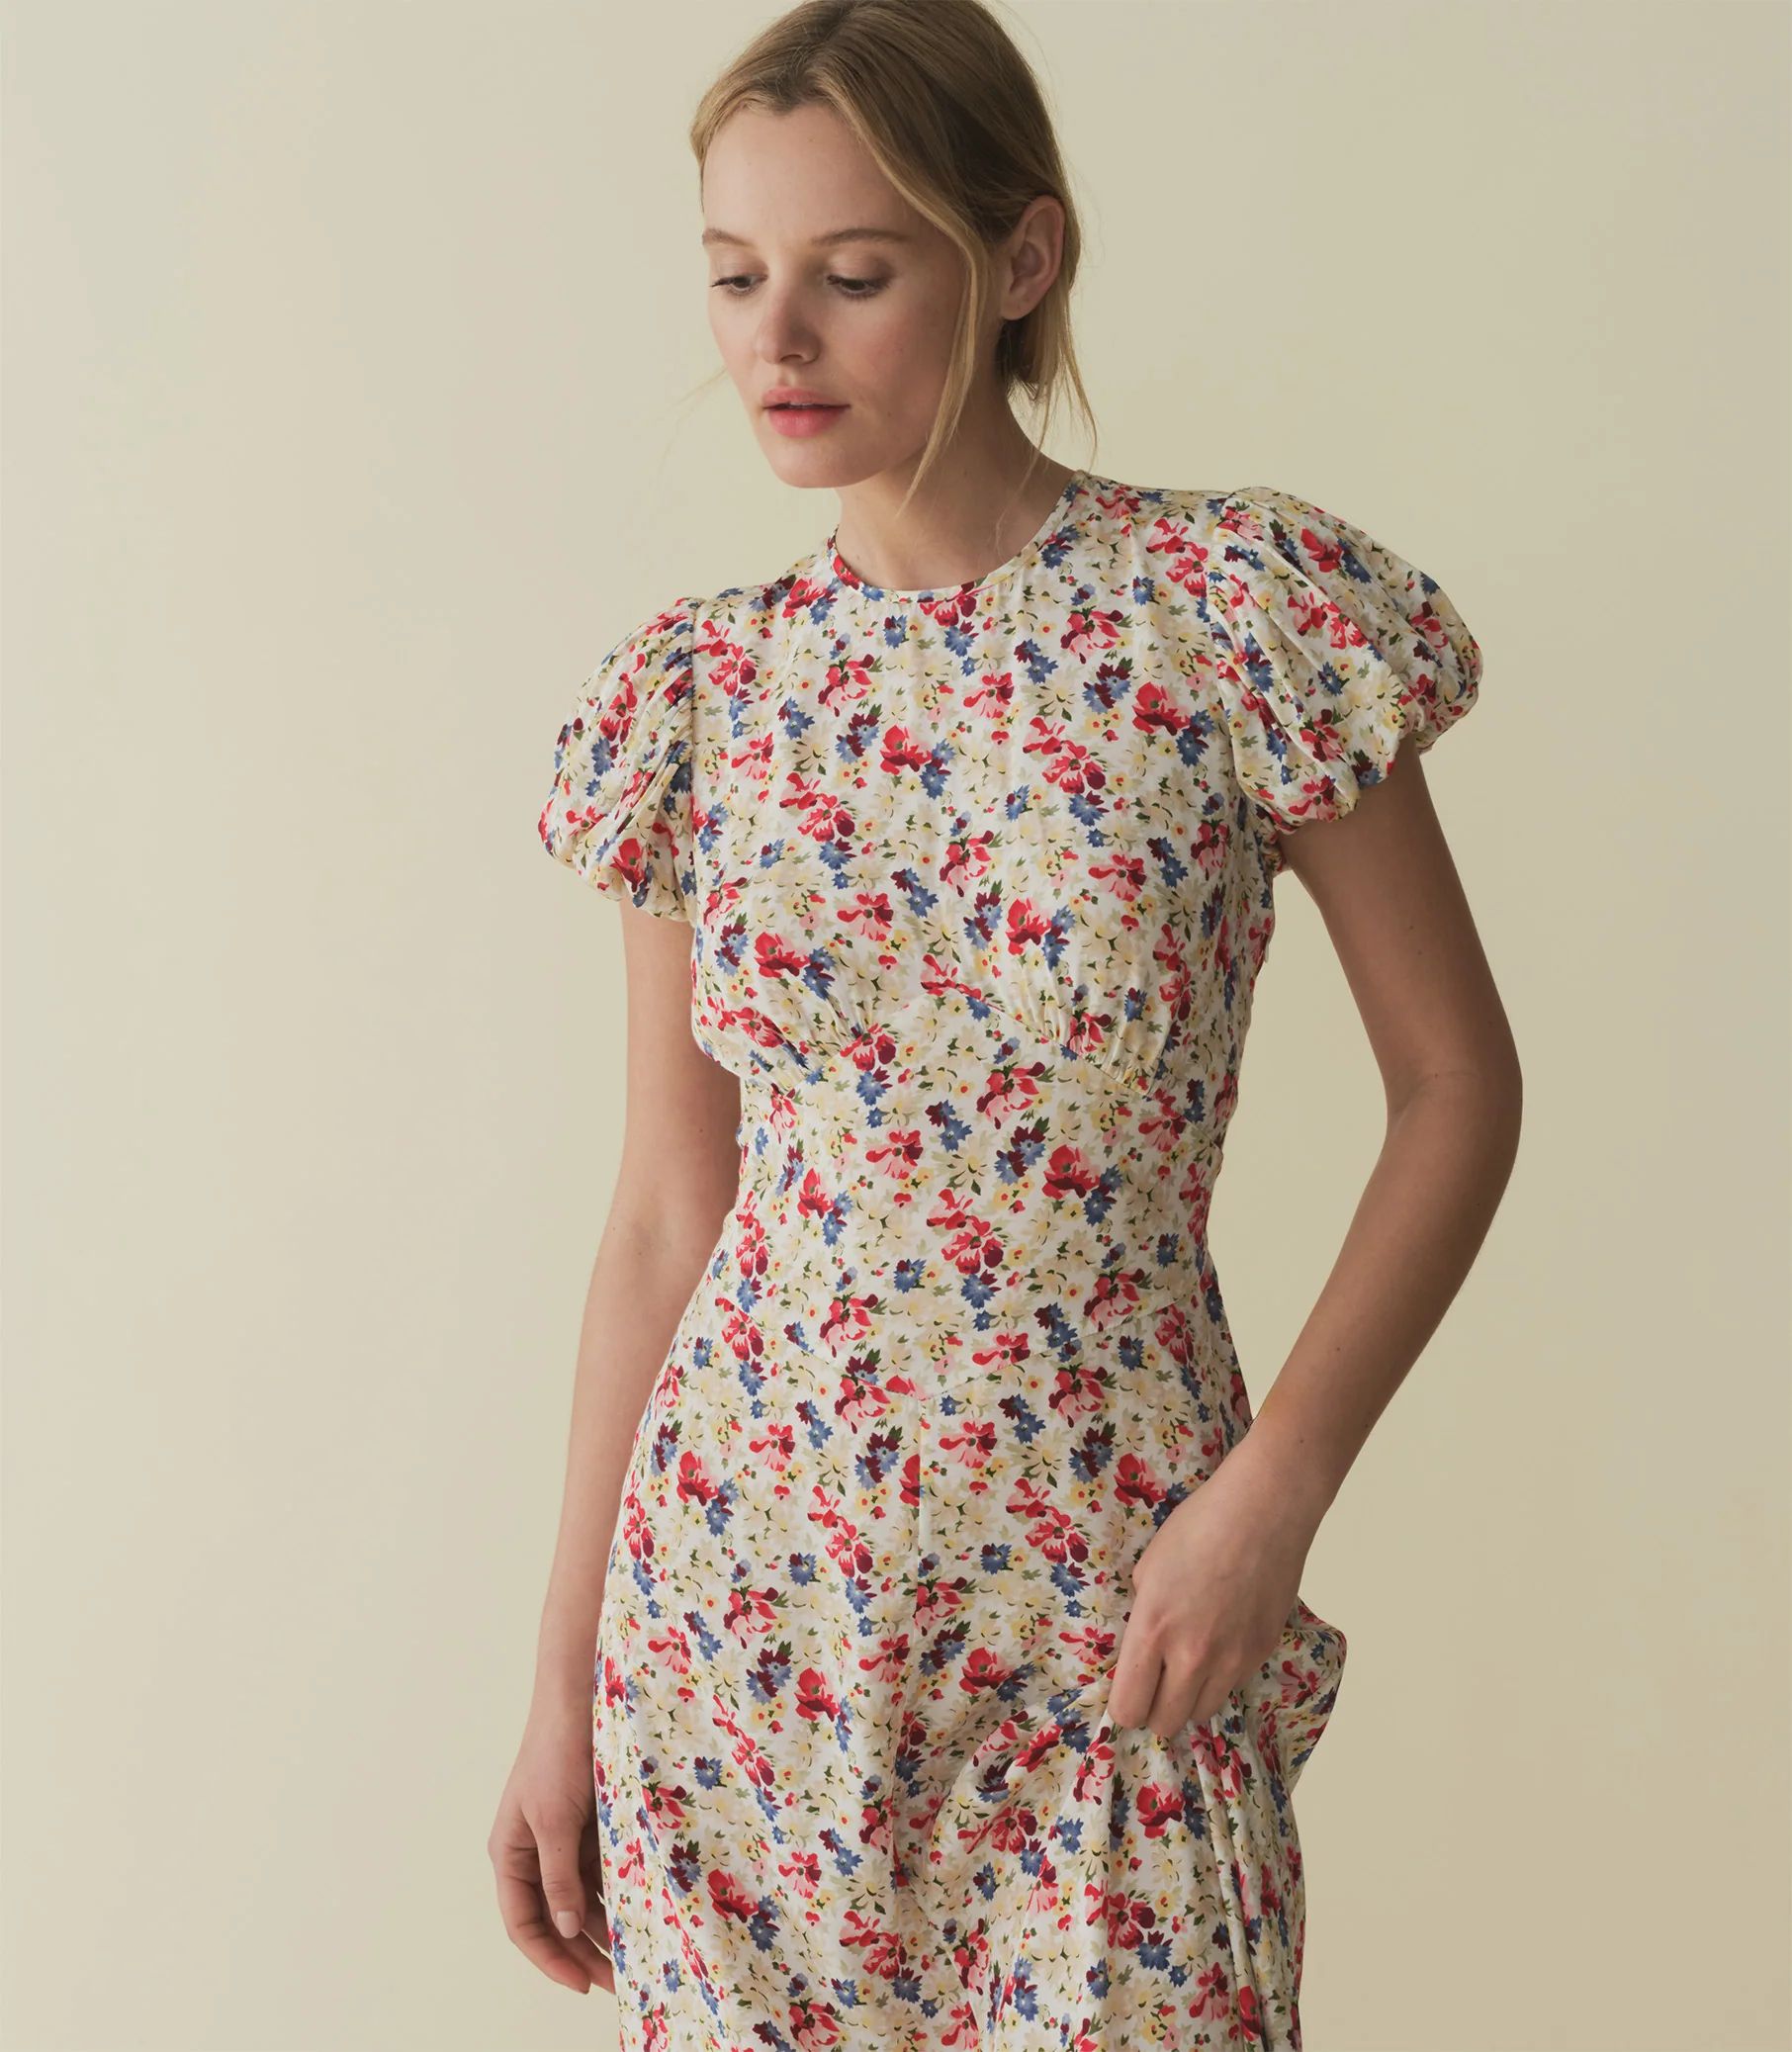 Rhodia Dress - Wildflower Thicket| DÔEN | DOEN